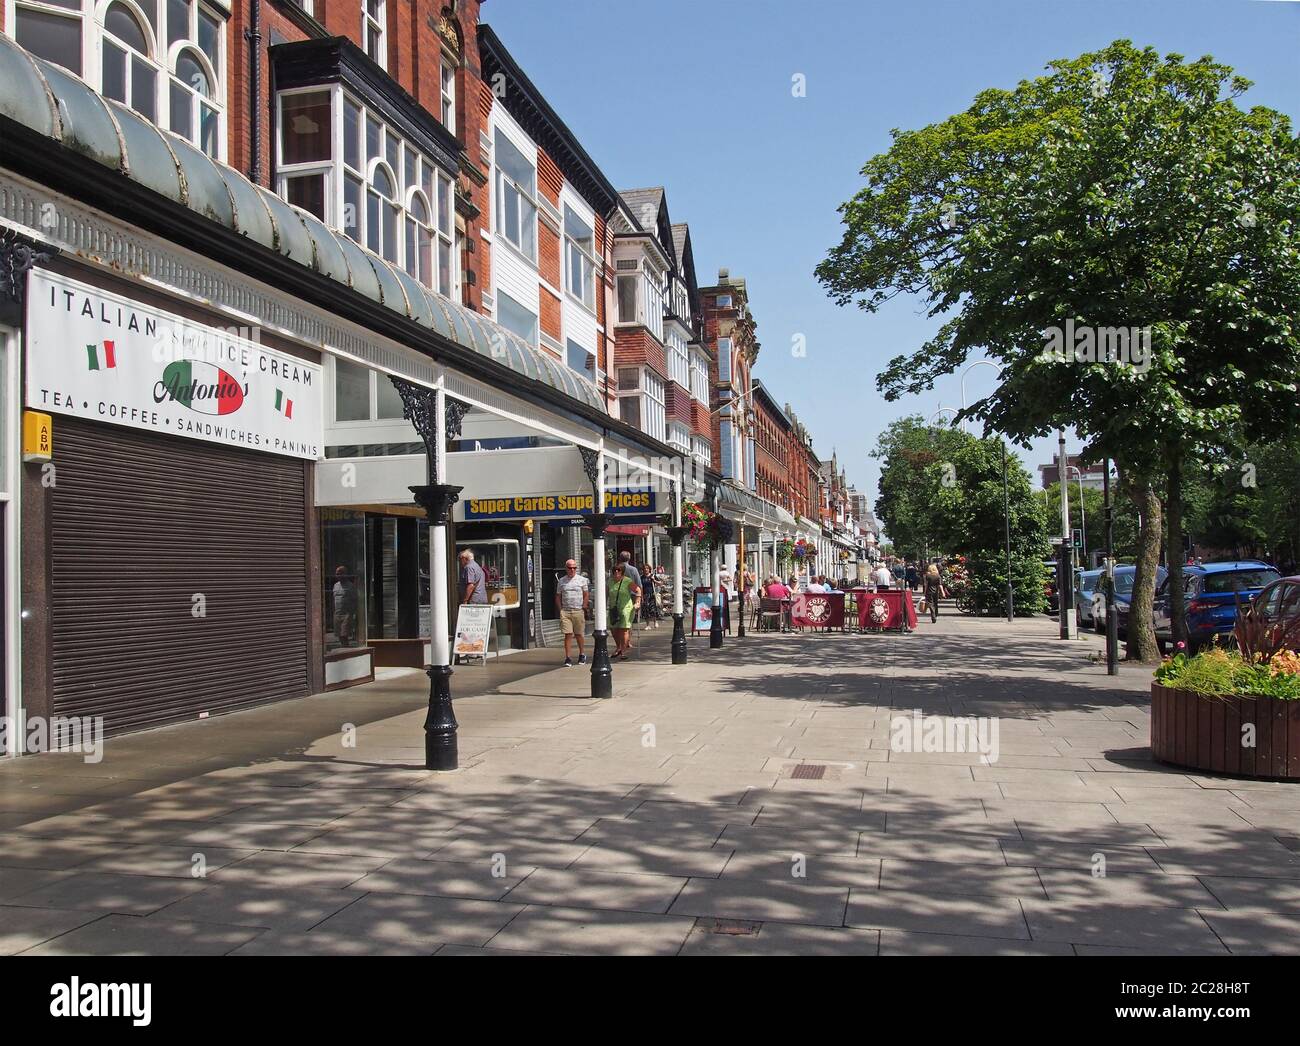 persone sedute in caffè all'aperto e camminate davanti ai negozi nella storica area dello shopping di lord street a southport merseyside Foto Stock